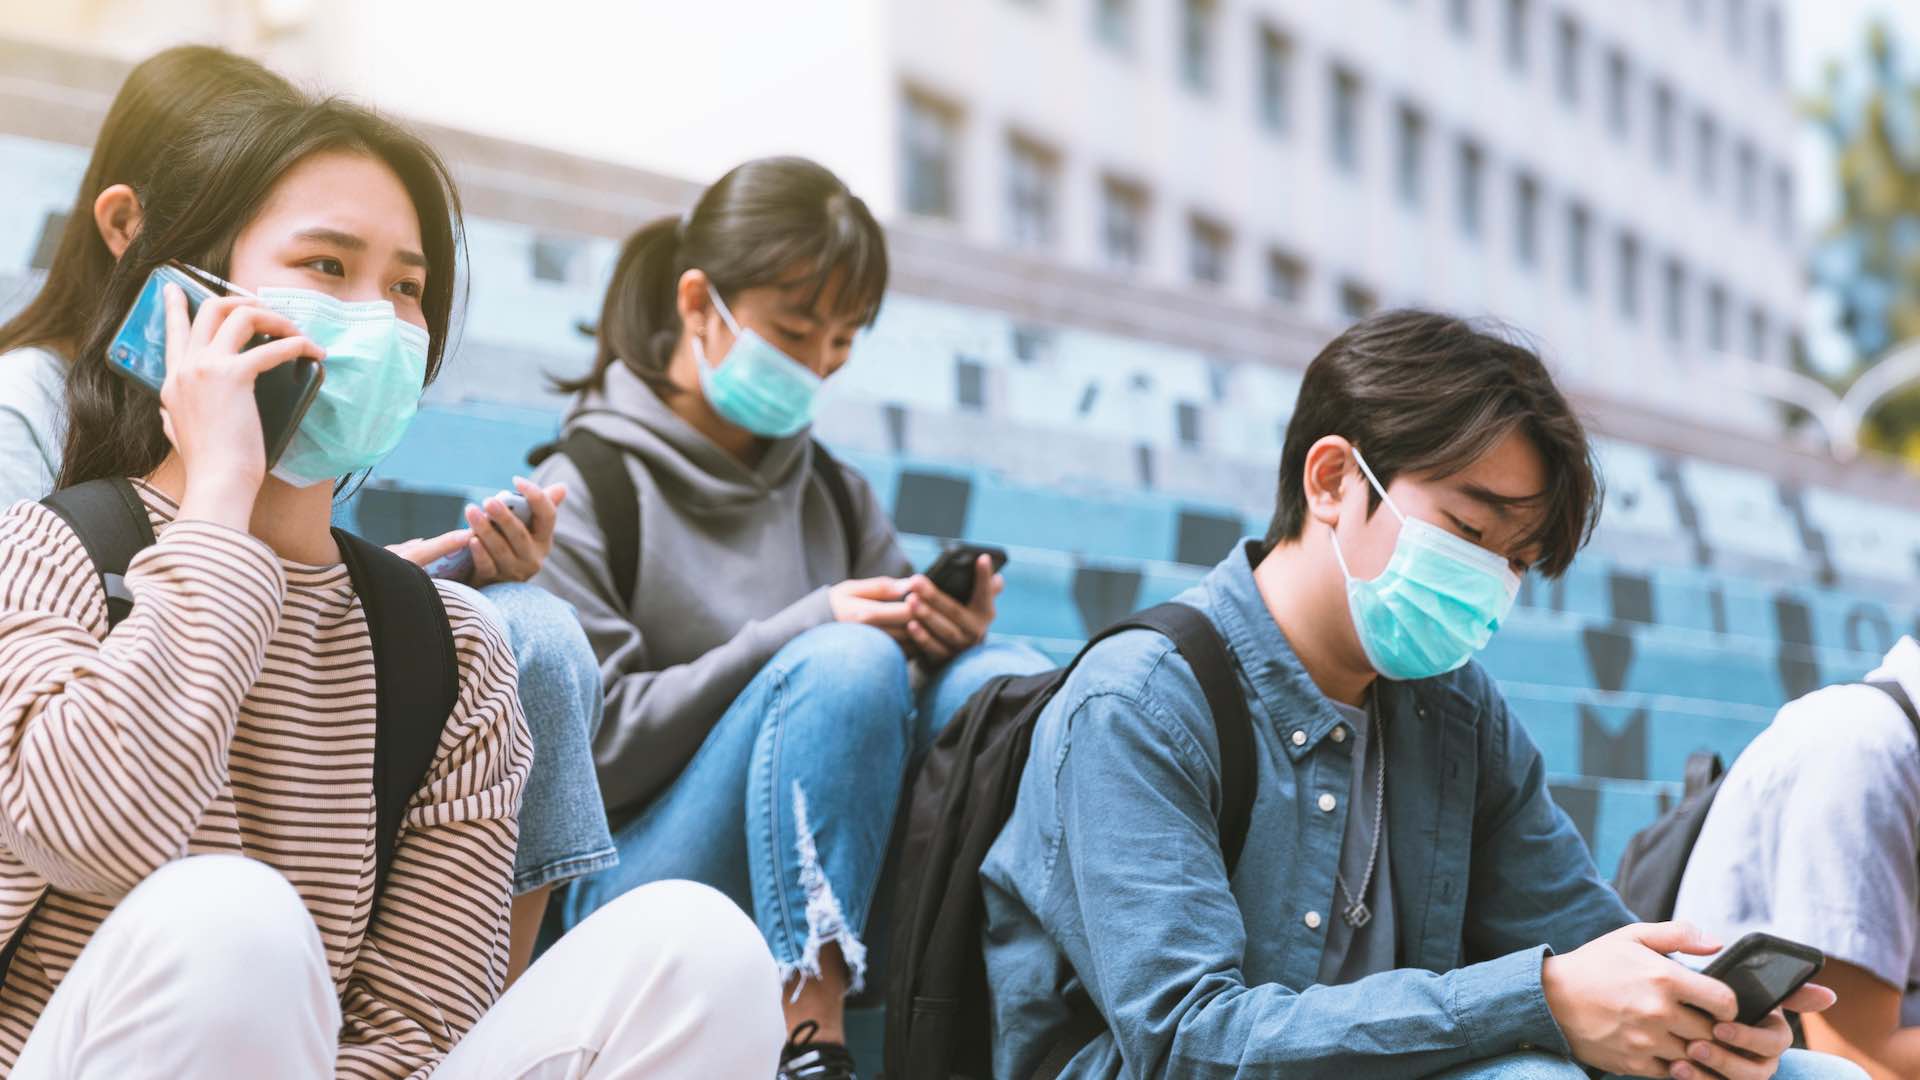 د روغتیا نړیوال سازمان په چین کې د تنفسي ناروغیو په اړه تحقیقات کوي